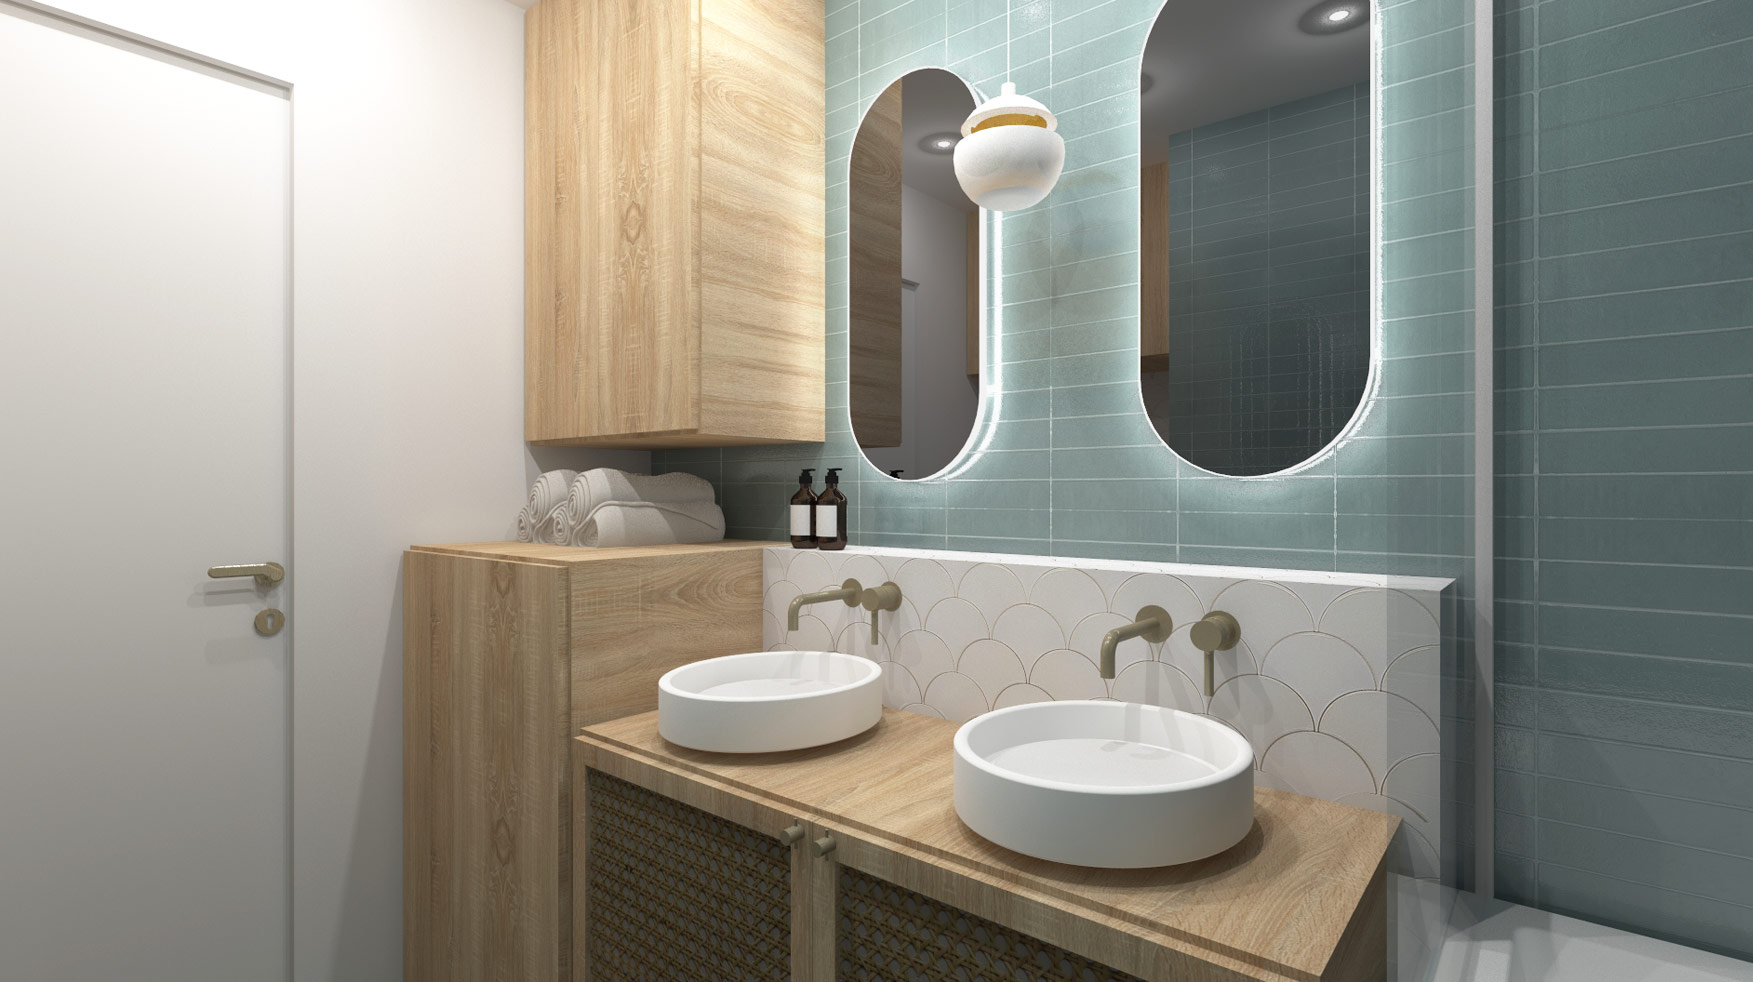 KLR : Rénovation intérieure d’un appartement à Paris, aménagement d’une salle de bain.